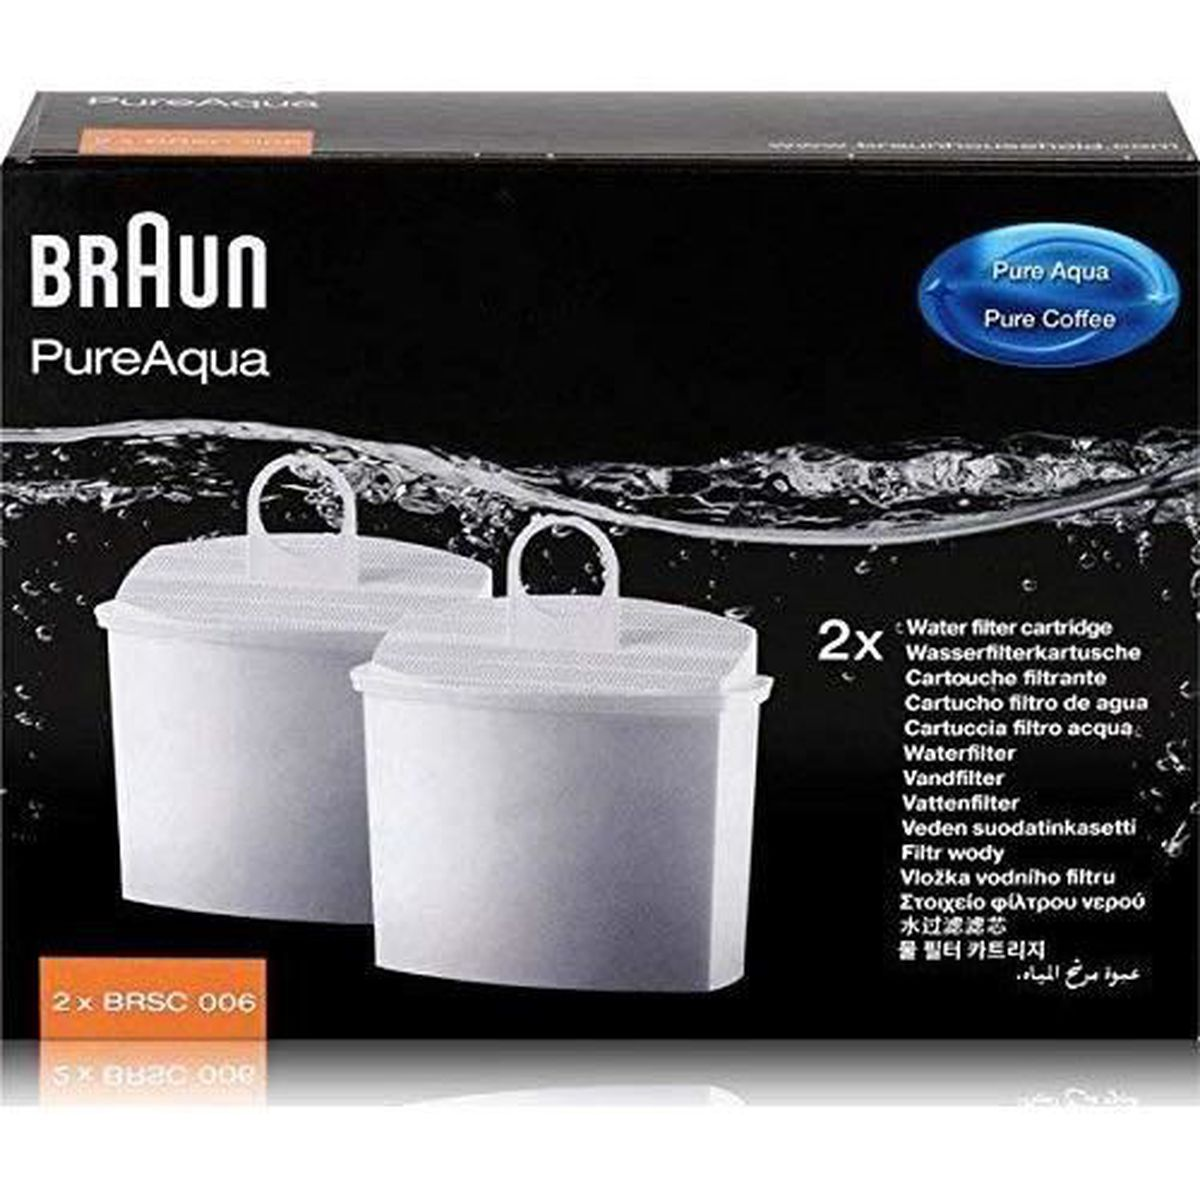 BRAUN BRSC006 - Kartusche * Wasserfilter für 2 Füllstoff Kaffeemaschine